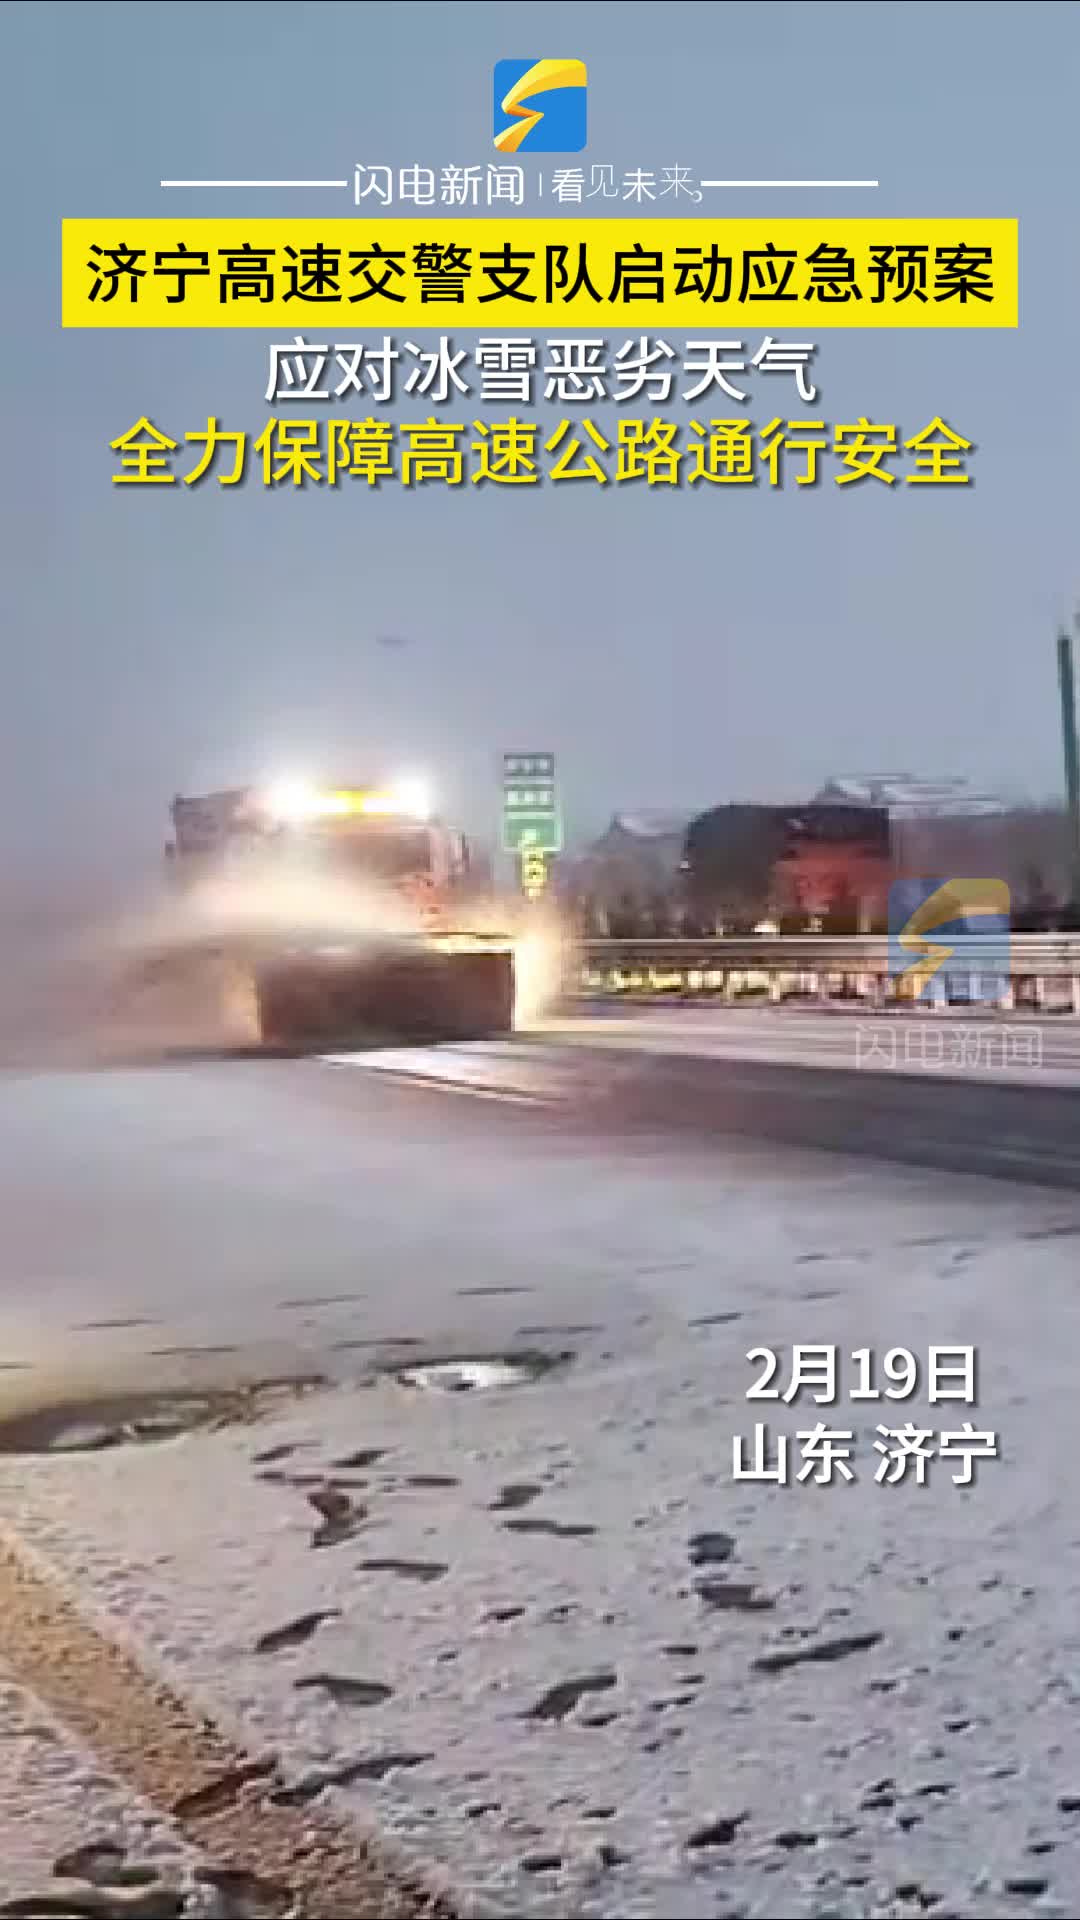 济宁高速交警支队启动应急预案应对冰雪恶劣天气 全力保障高速公路通行安全